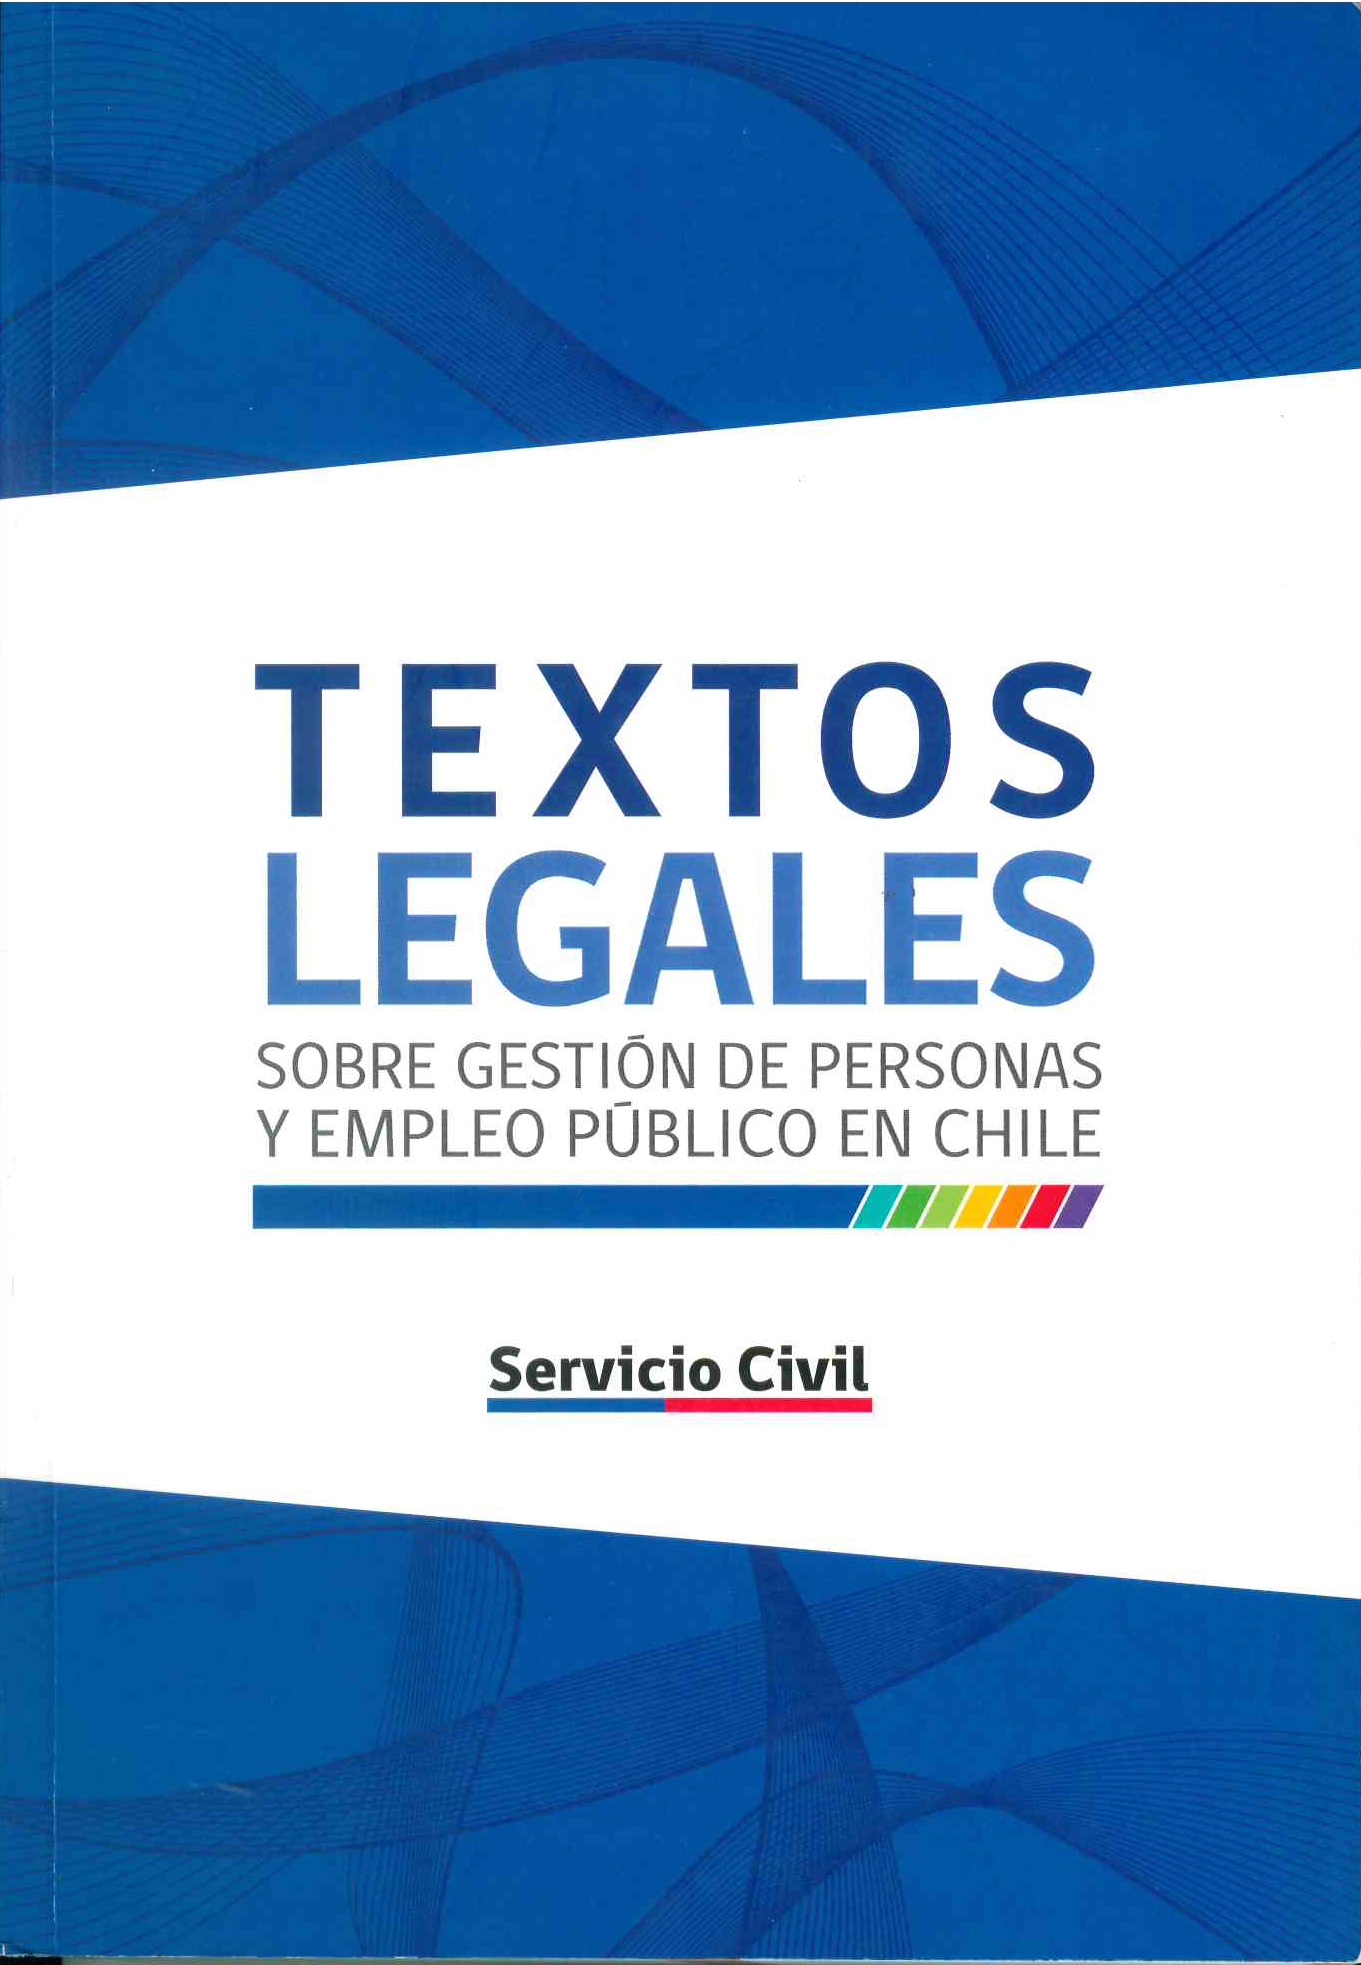 Textos Legales sobre gestión de personas y empleo público en Chile